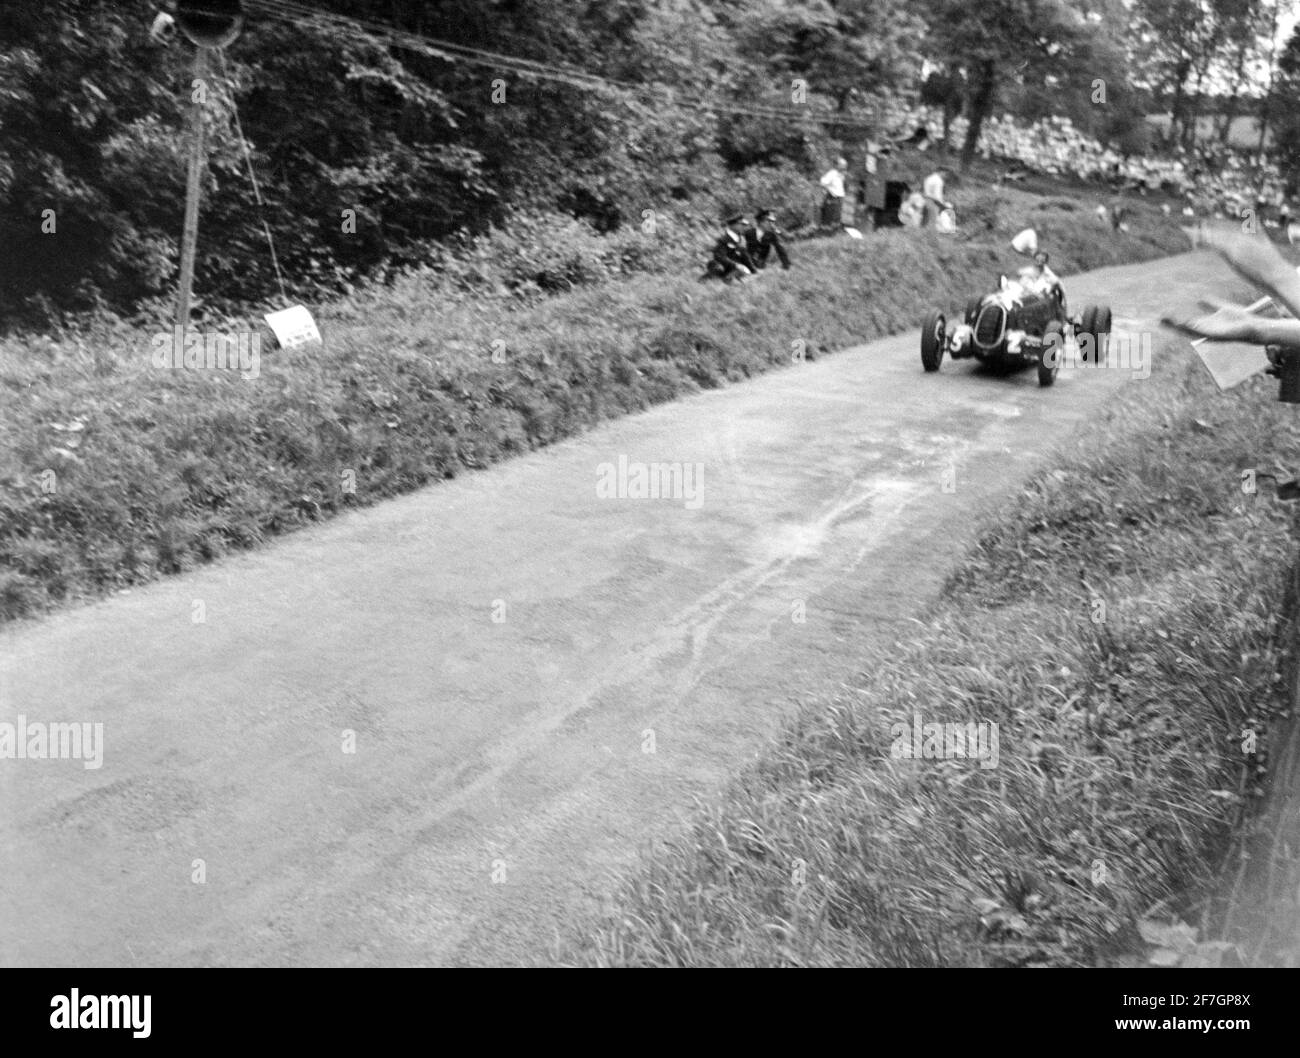 Vintage Schwarz-Weiß-Fotografie, aufgenommen 1950 auf der Rennstrecke Shelsley Walsh Hill Climb in England. Fahrer R. D. Poole fährt einen Alfa 3800(S). Stockfoto